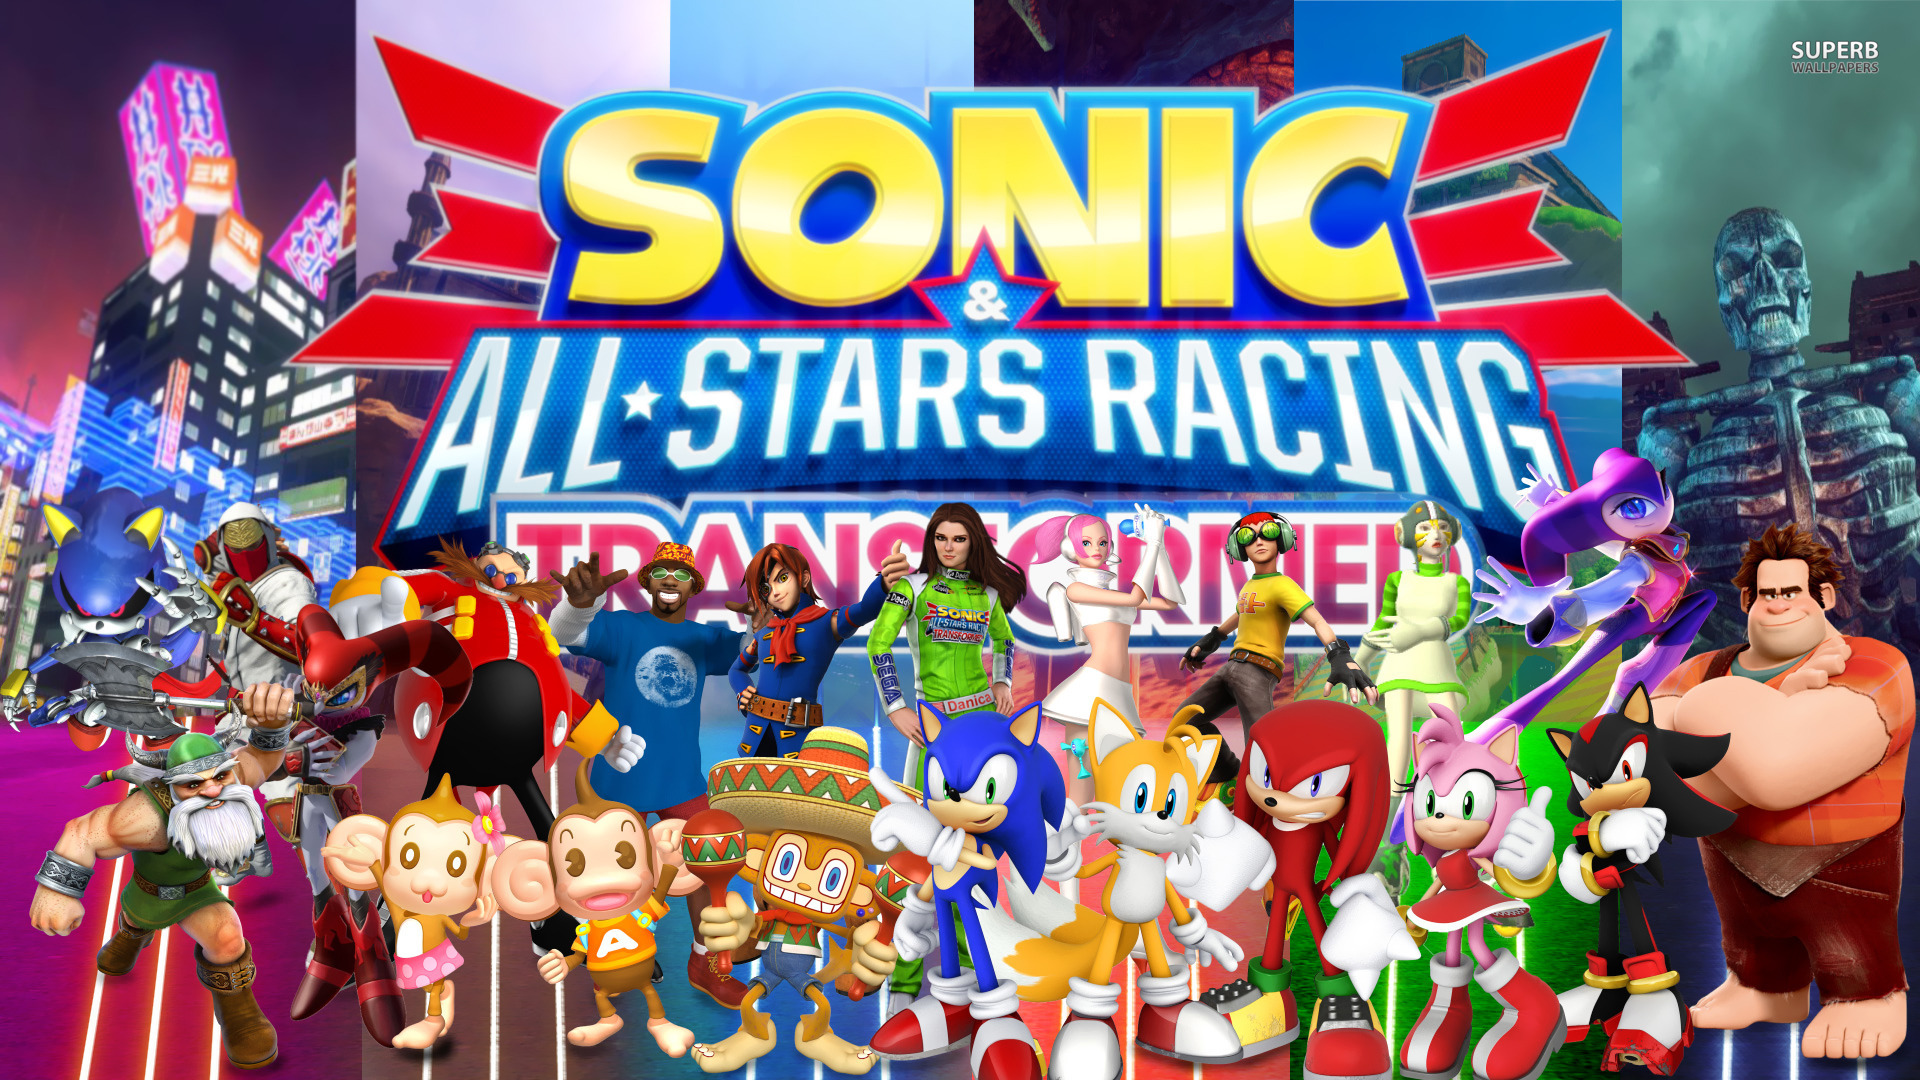 Jogo Sonic & All Star Racing Transformed Xbox 360 Sega com o